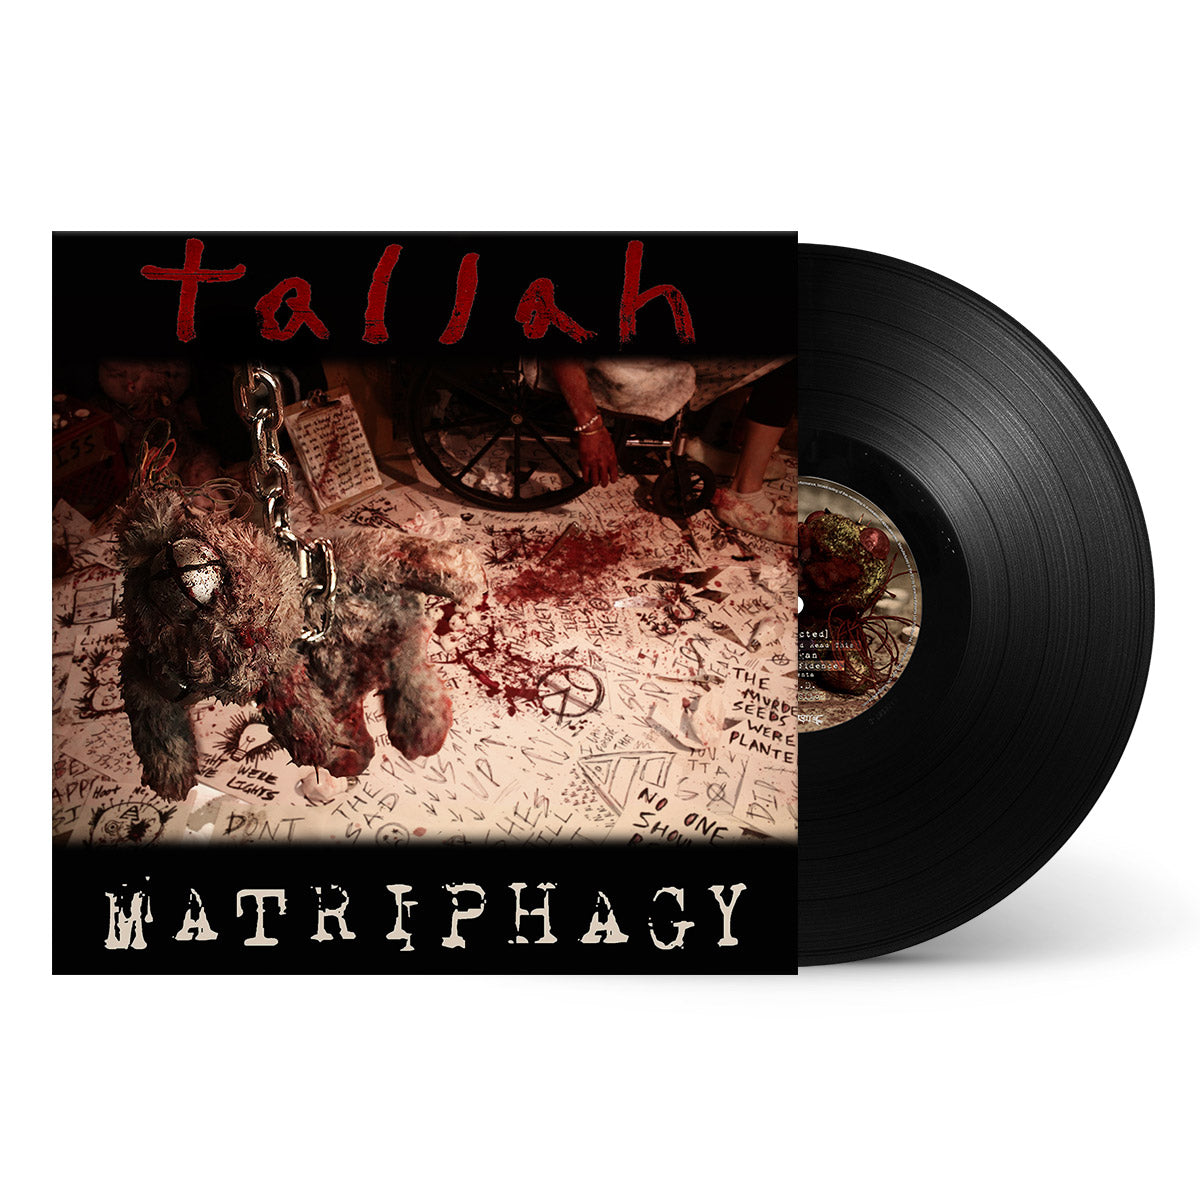 Tallah "Matriphagy" Black Vinyl